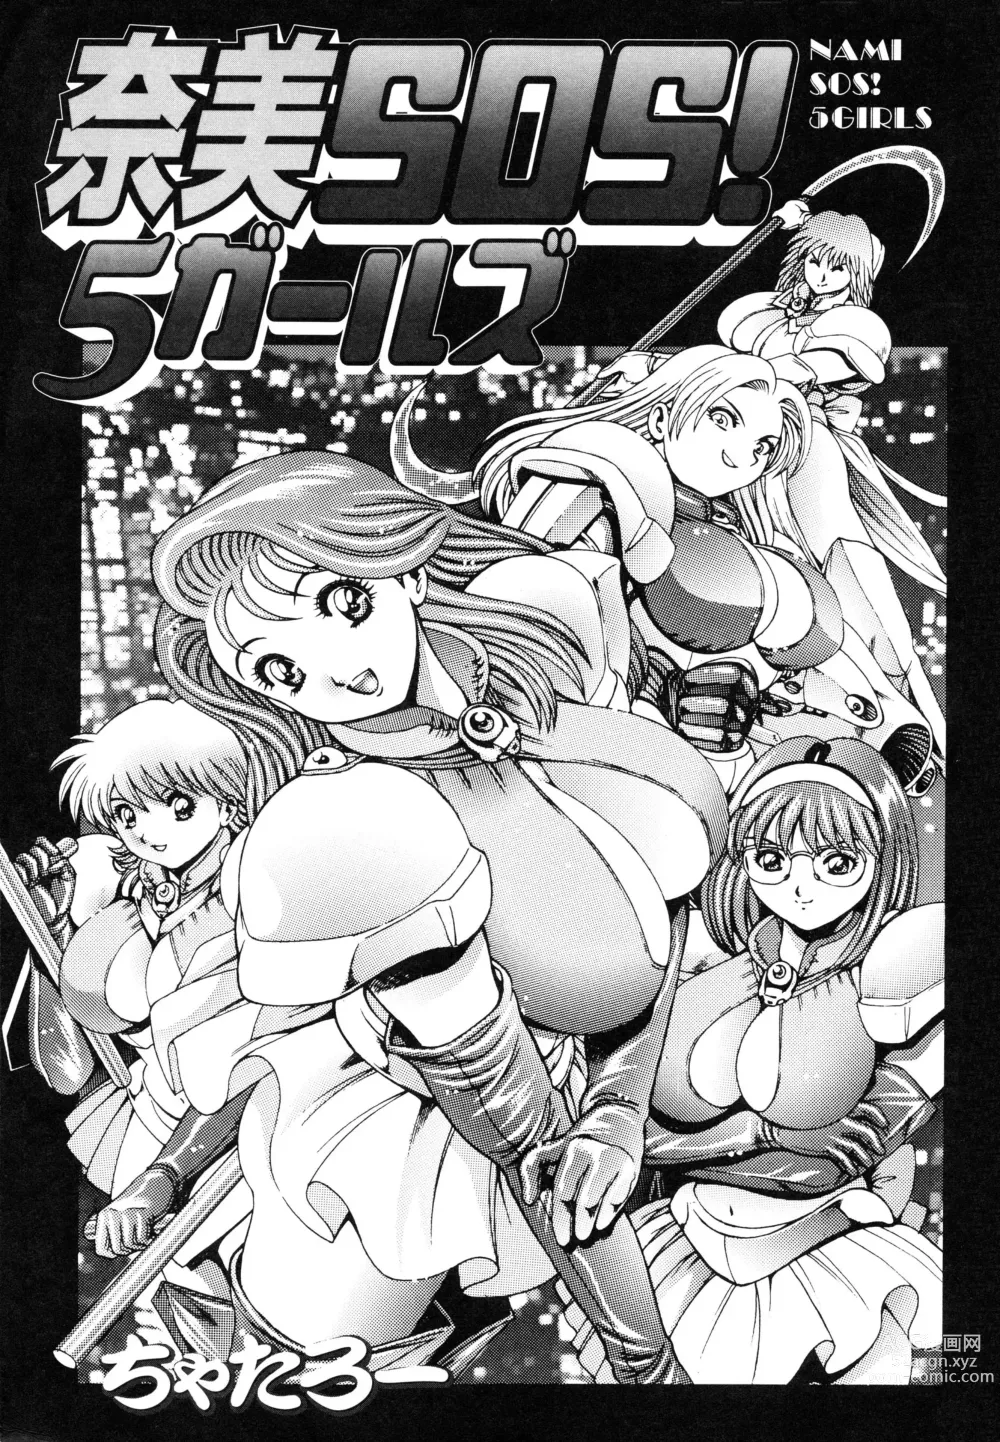 Page 3 of manga Nami SOS! 5 Girls